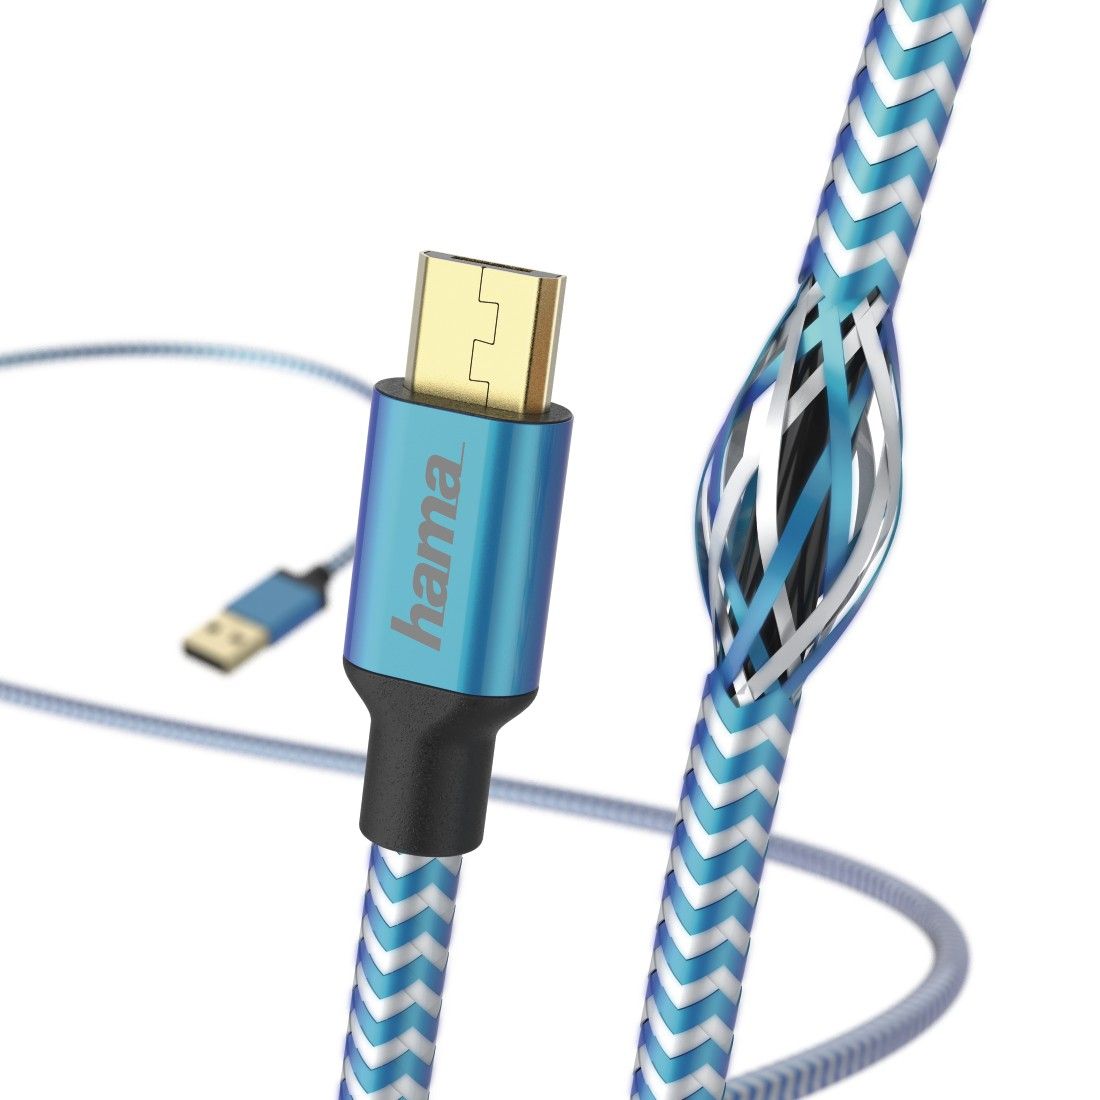 ZESTAW Hama ładowarka sieciowa + kabel ładujący (micro USB 1,5m)